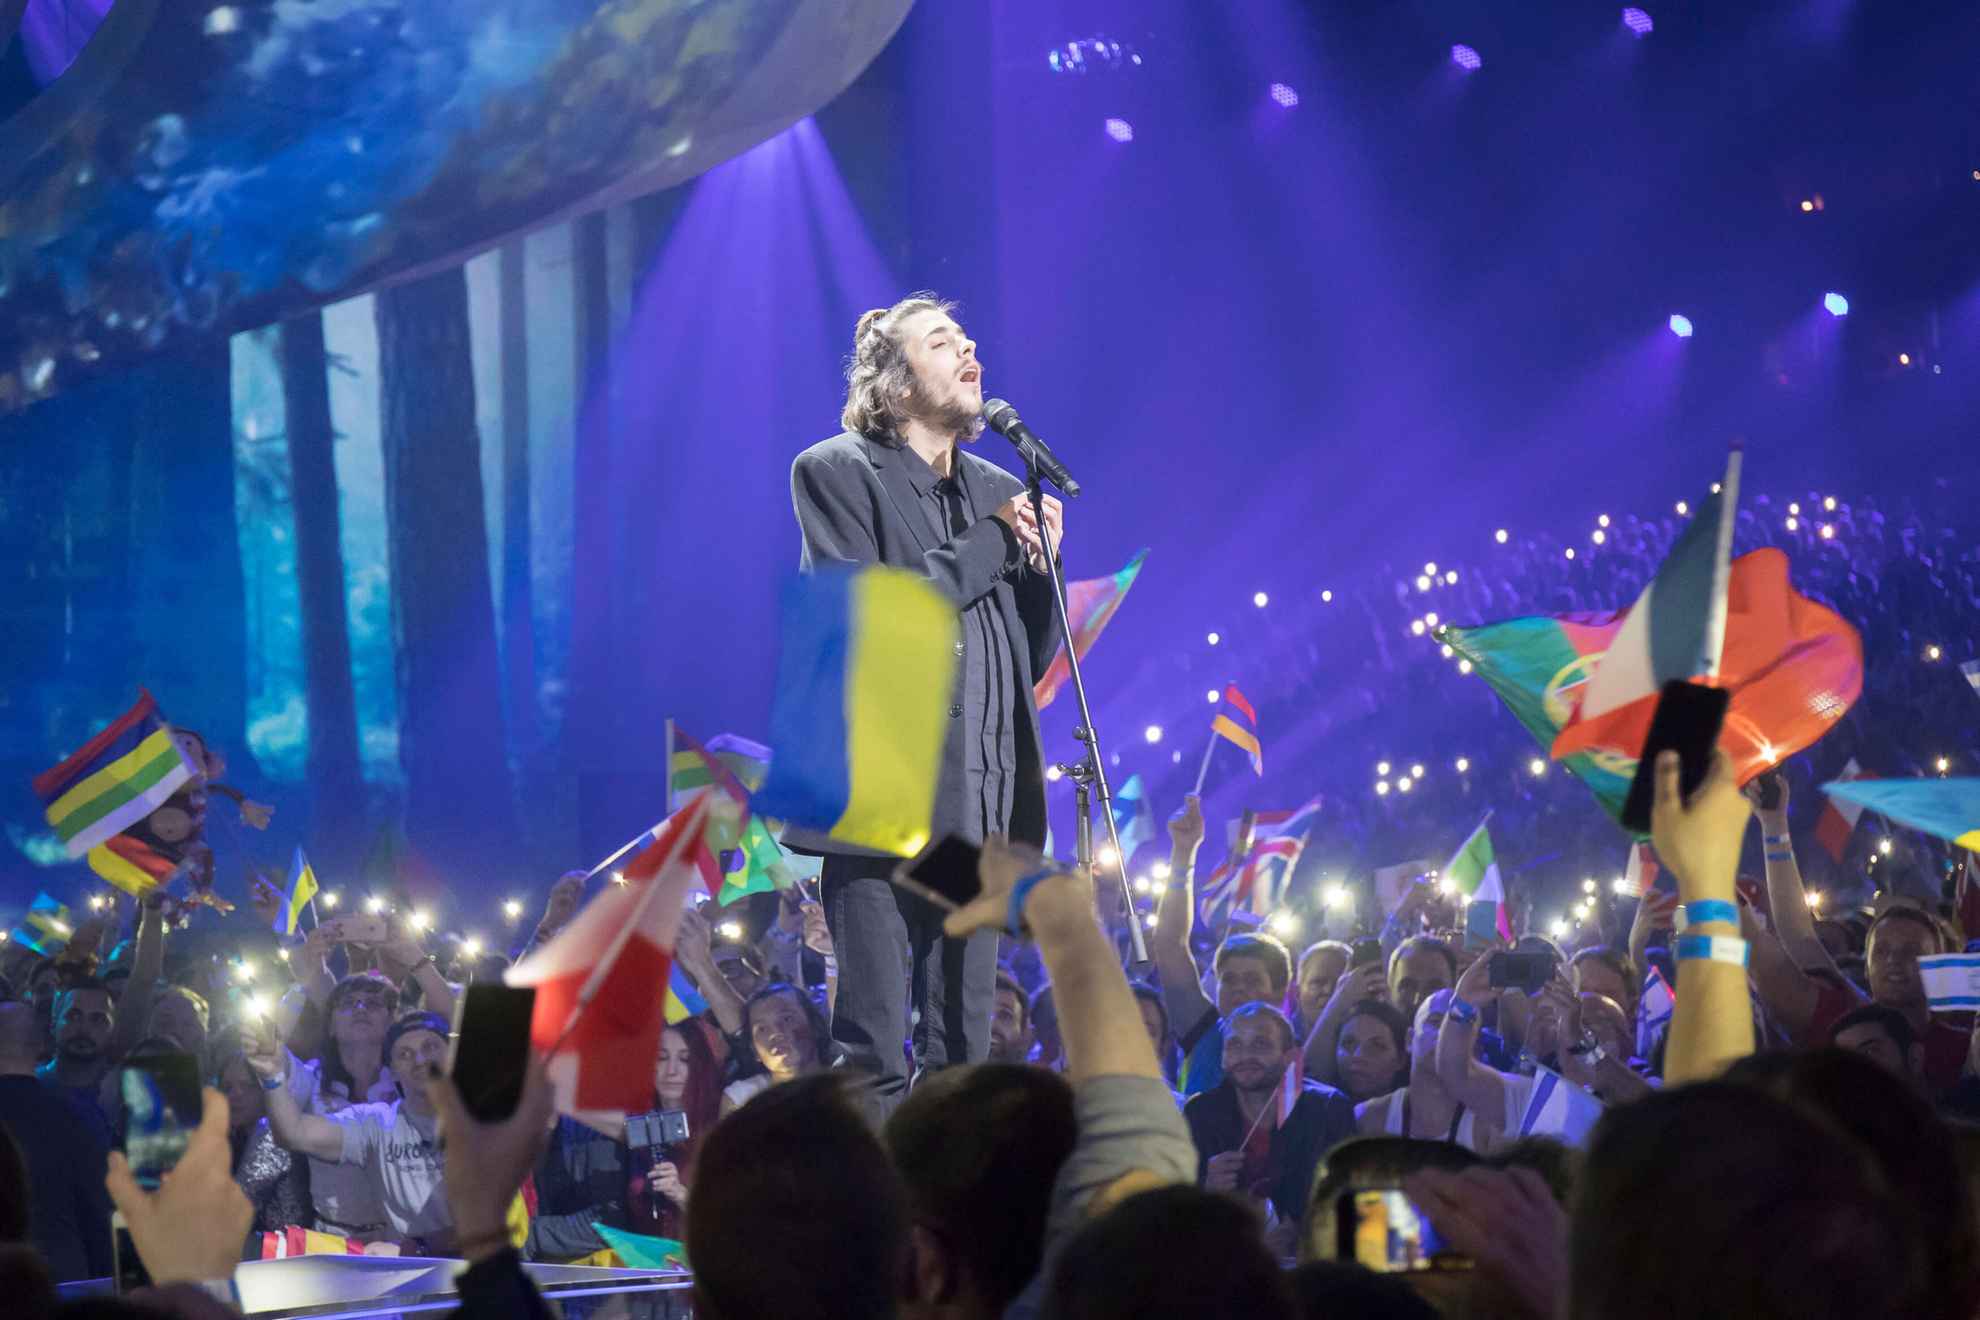 Salvador Sobral, gagnant du Concours Eurovision de la chanson 2017, est en train de se produire sur scène.